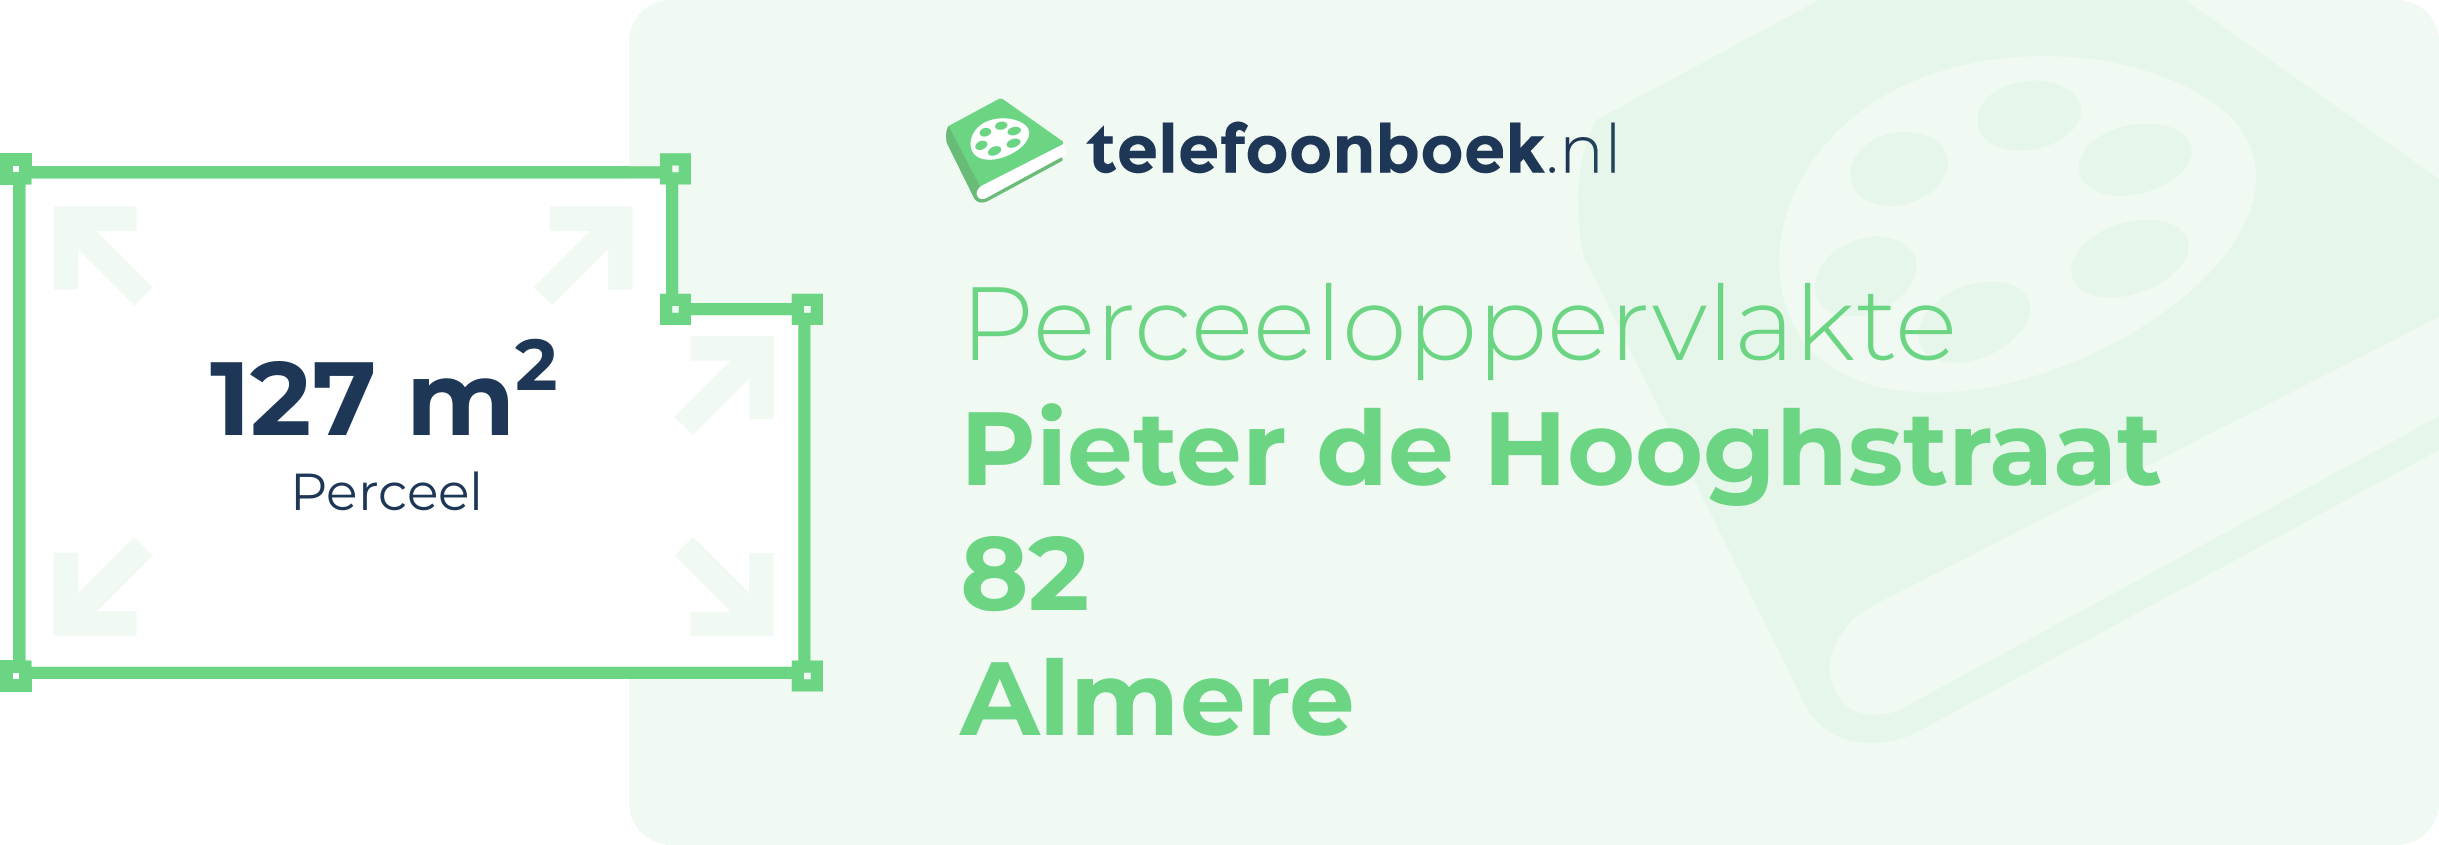 Perceeloppervlakte Pieter De Hooghstraat 82 Almere